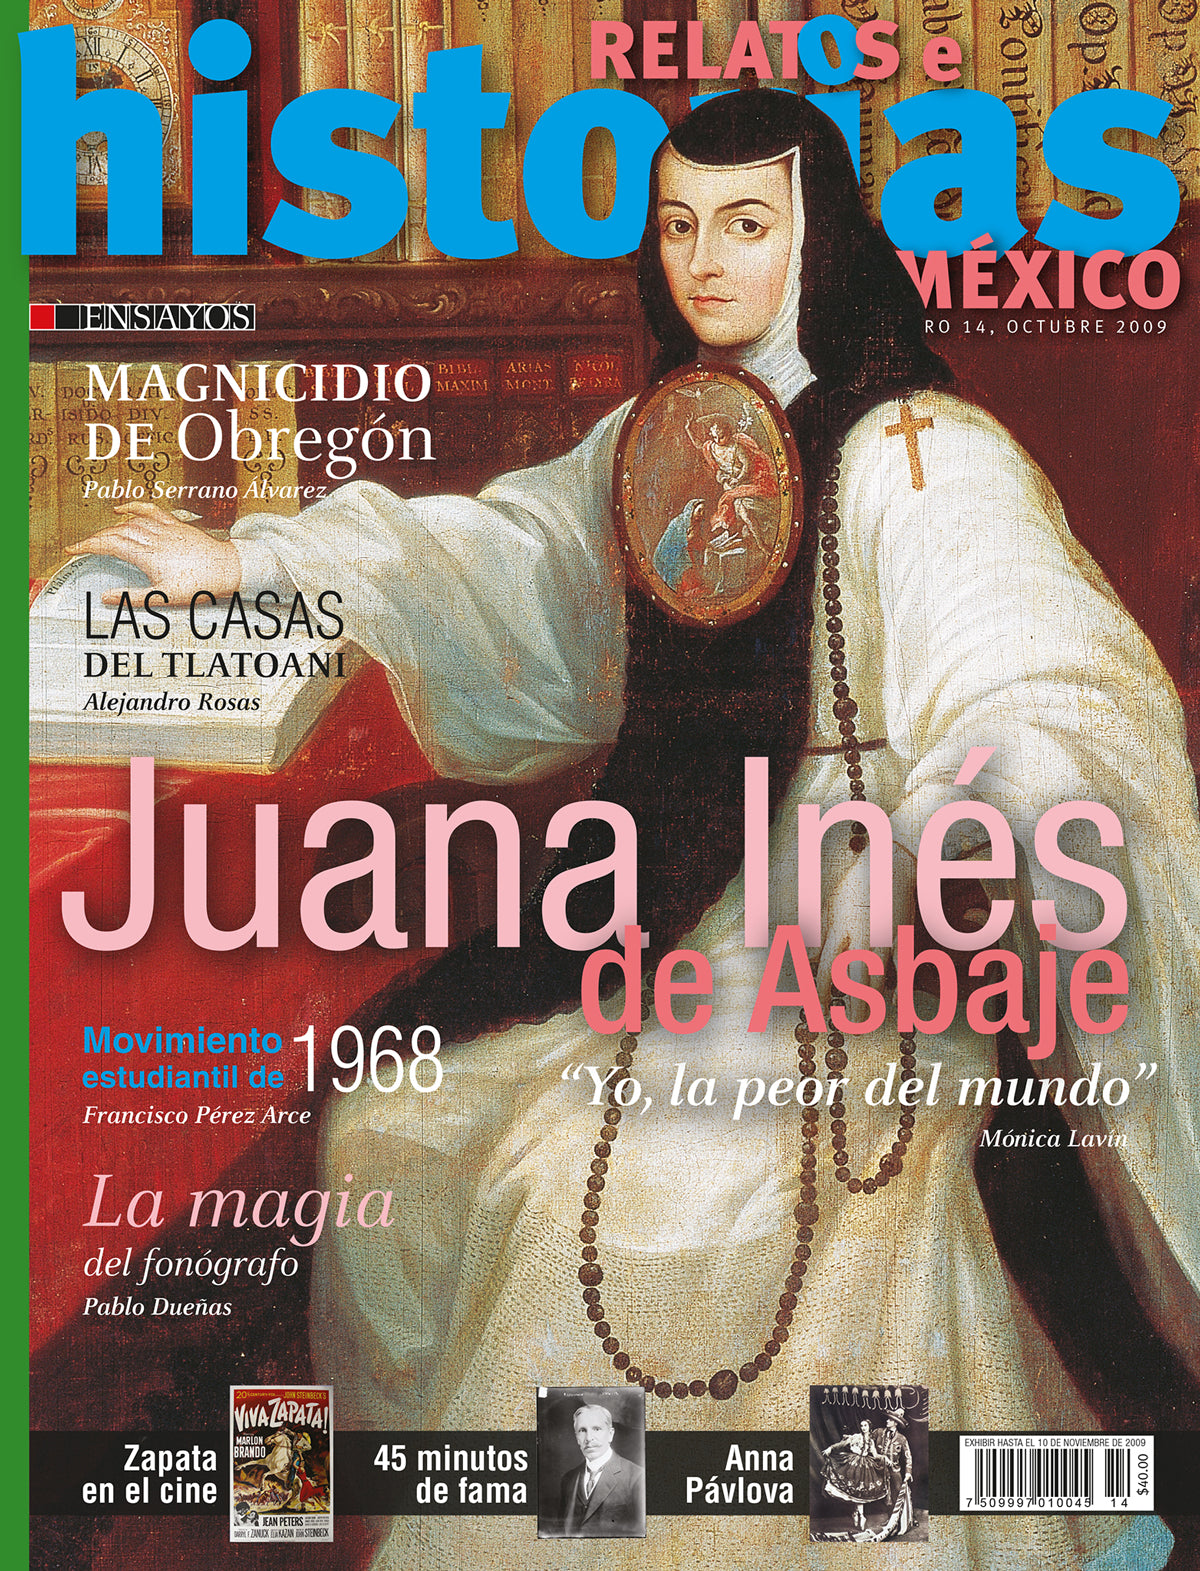 Juana Inés de Asbaje. "Yo, la peor del mundo"